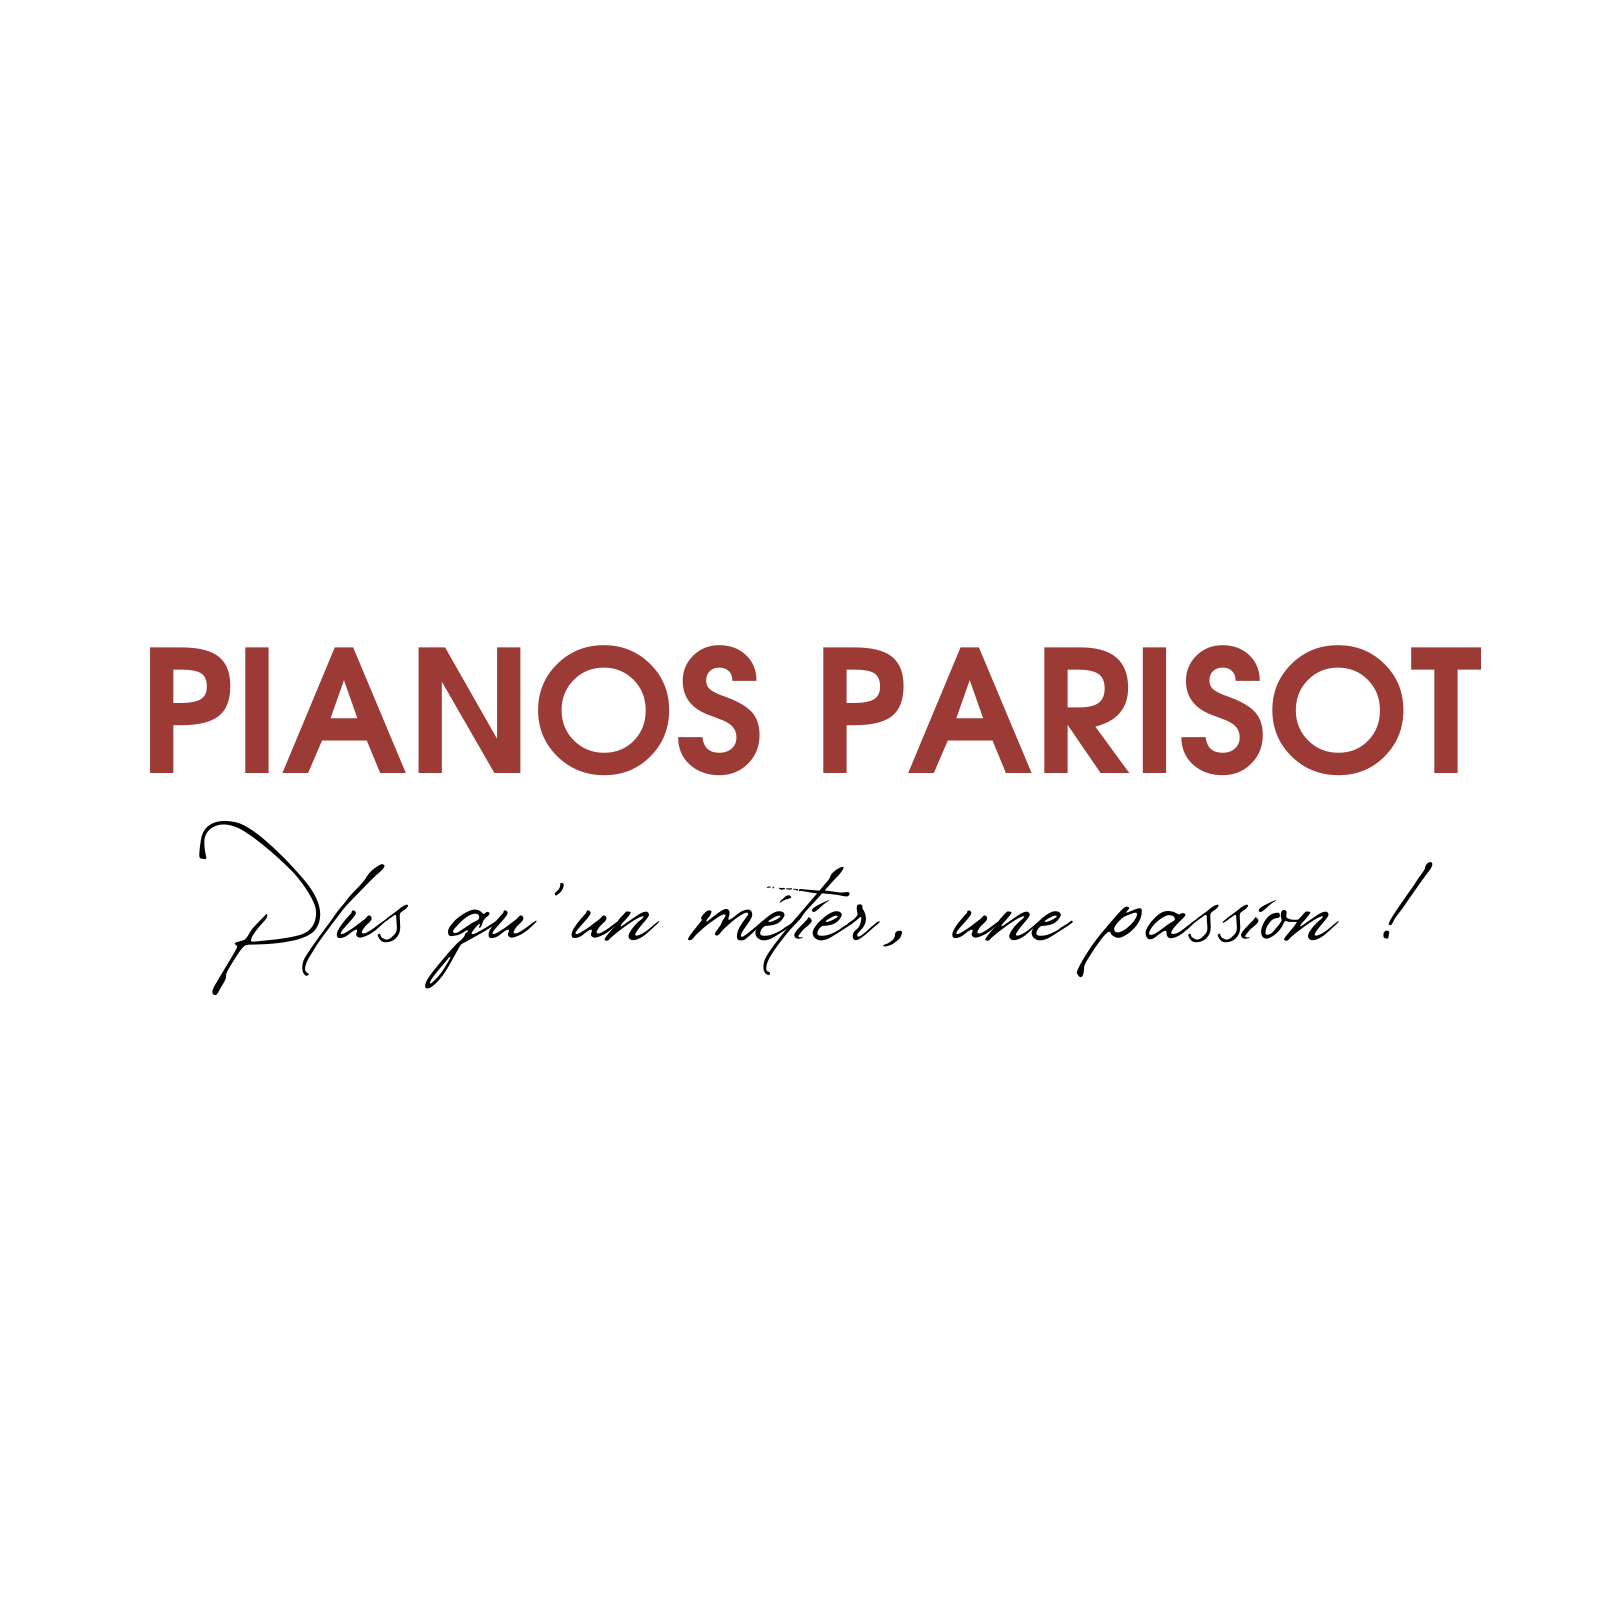 Pianos Parisot, plus qu'un métier, une passion !